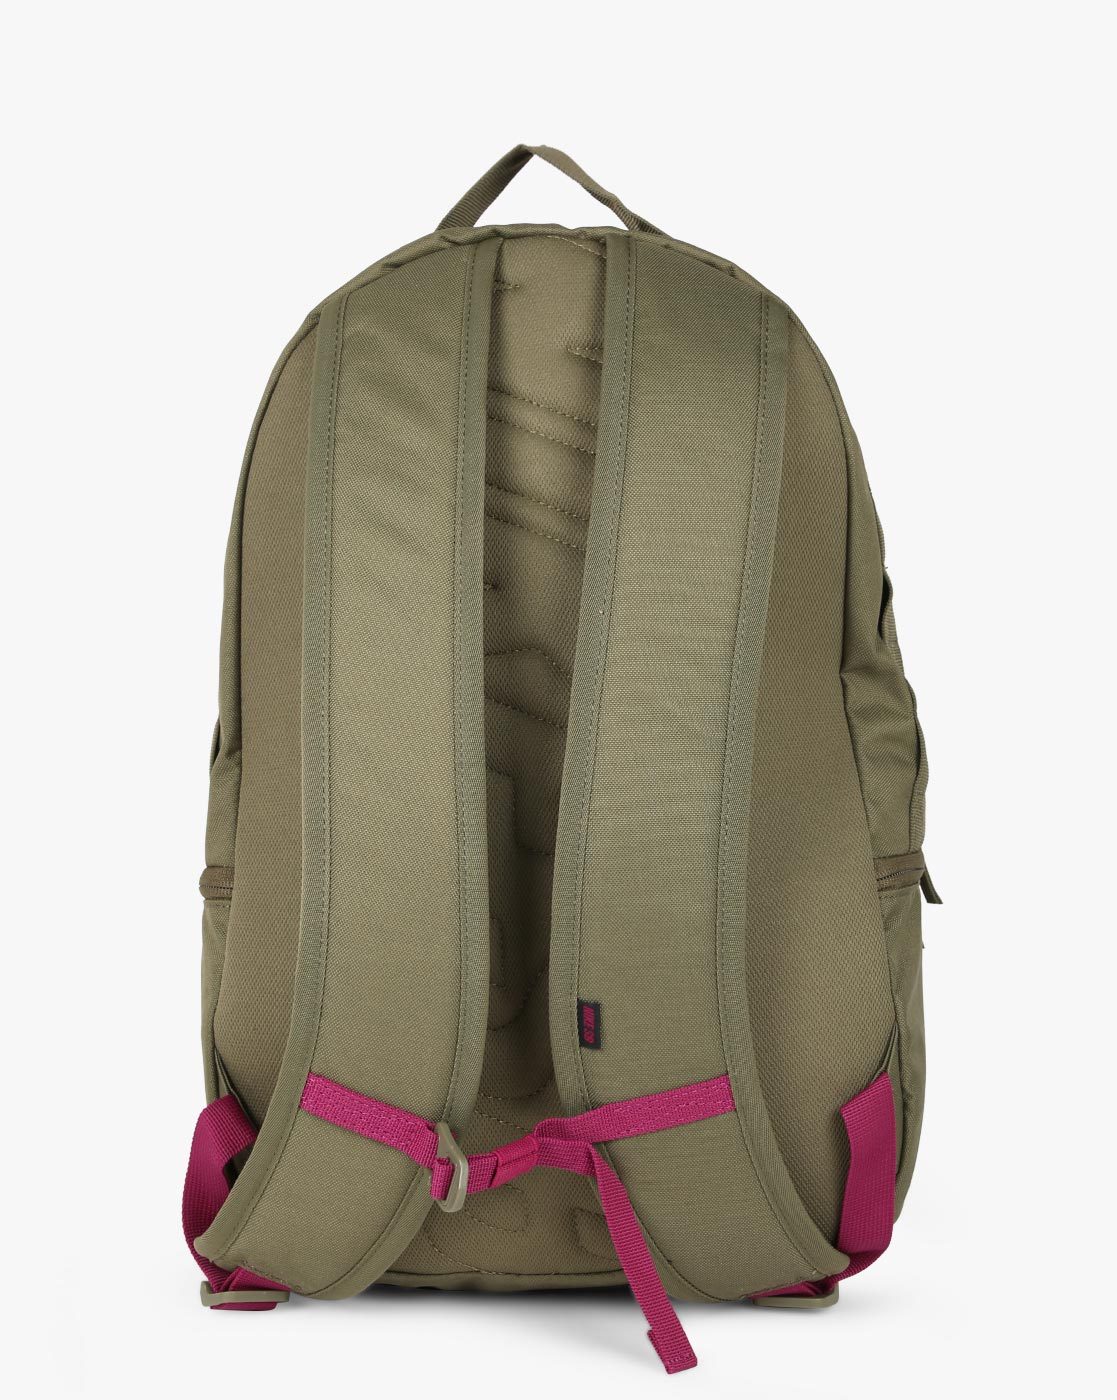 nike sb backpack olive green